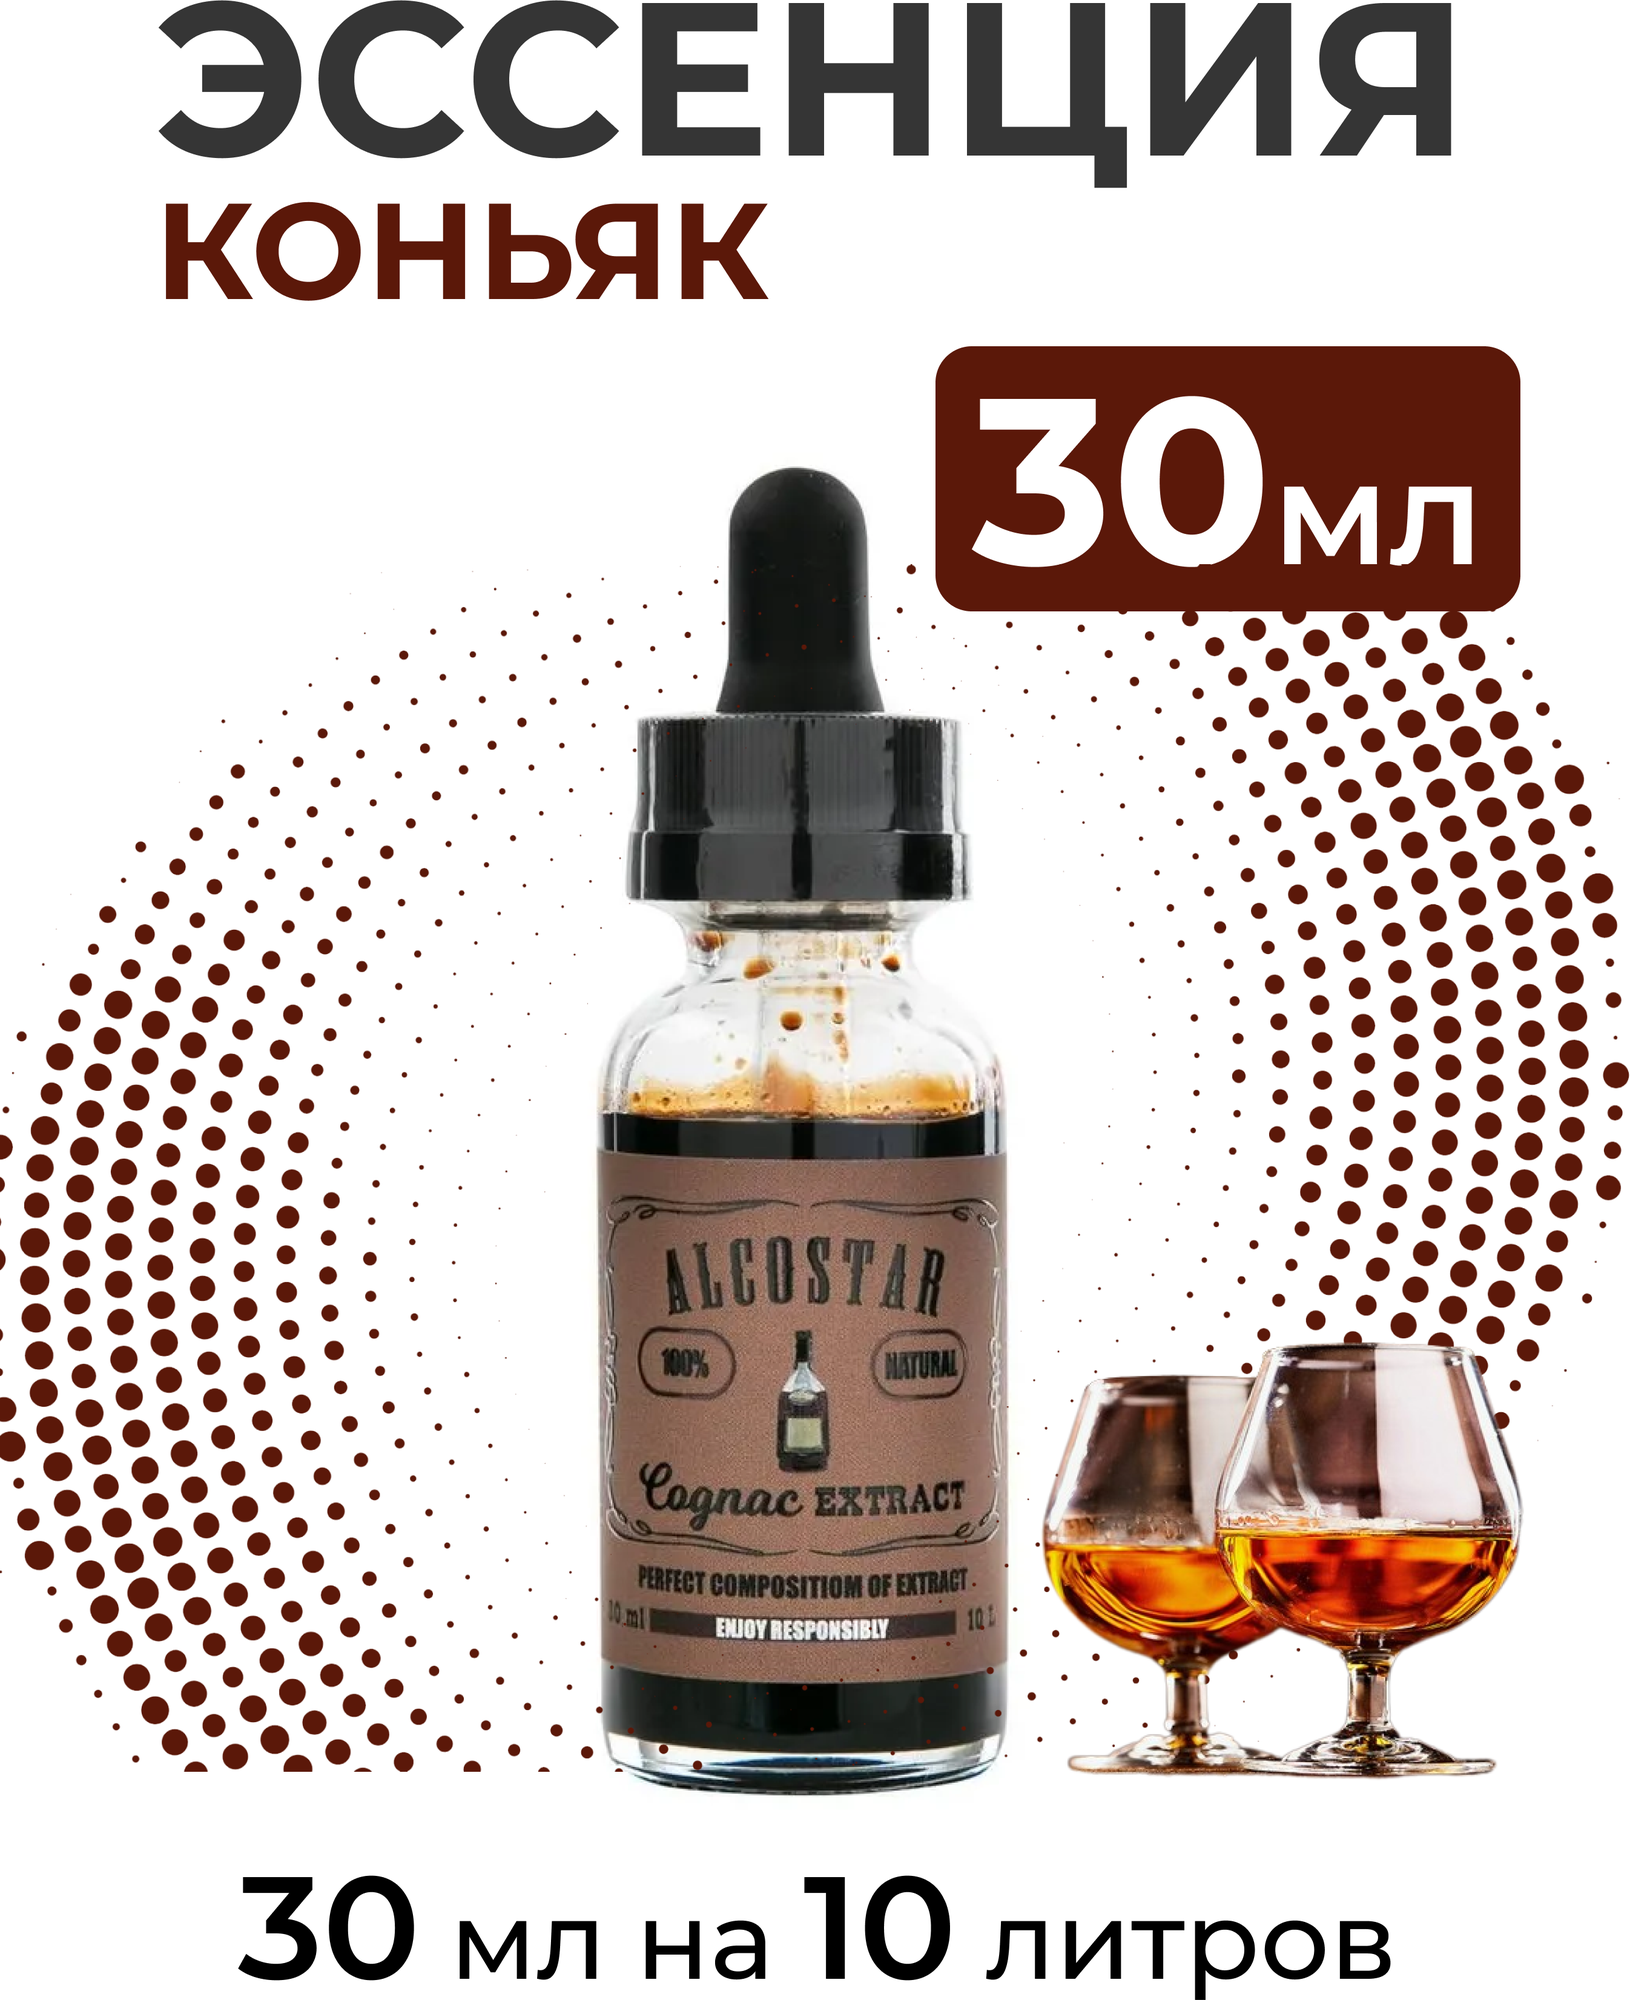 Эссенция Коньяк, Cognac Alcostar, вкусовой концентрат (ароматизатор пищевой) для самогона, 30 мл